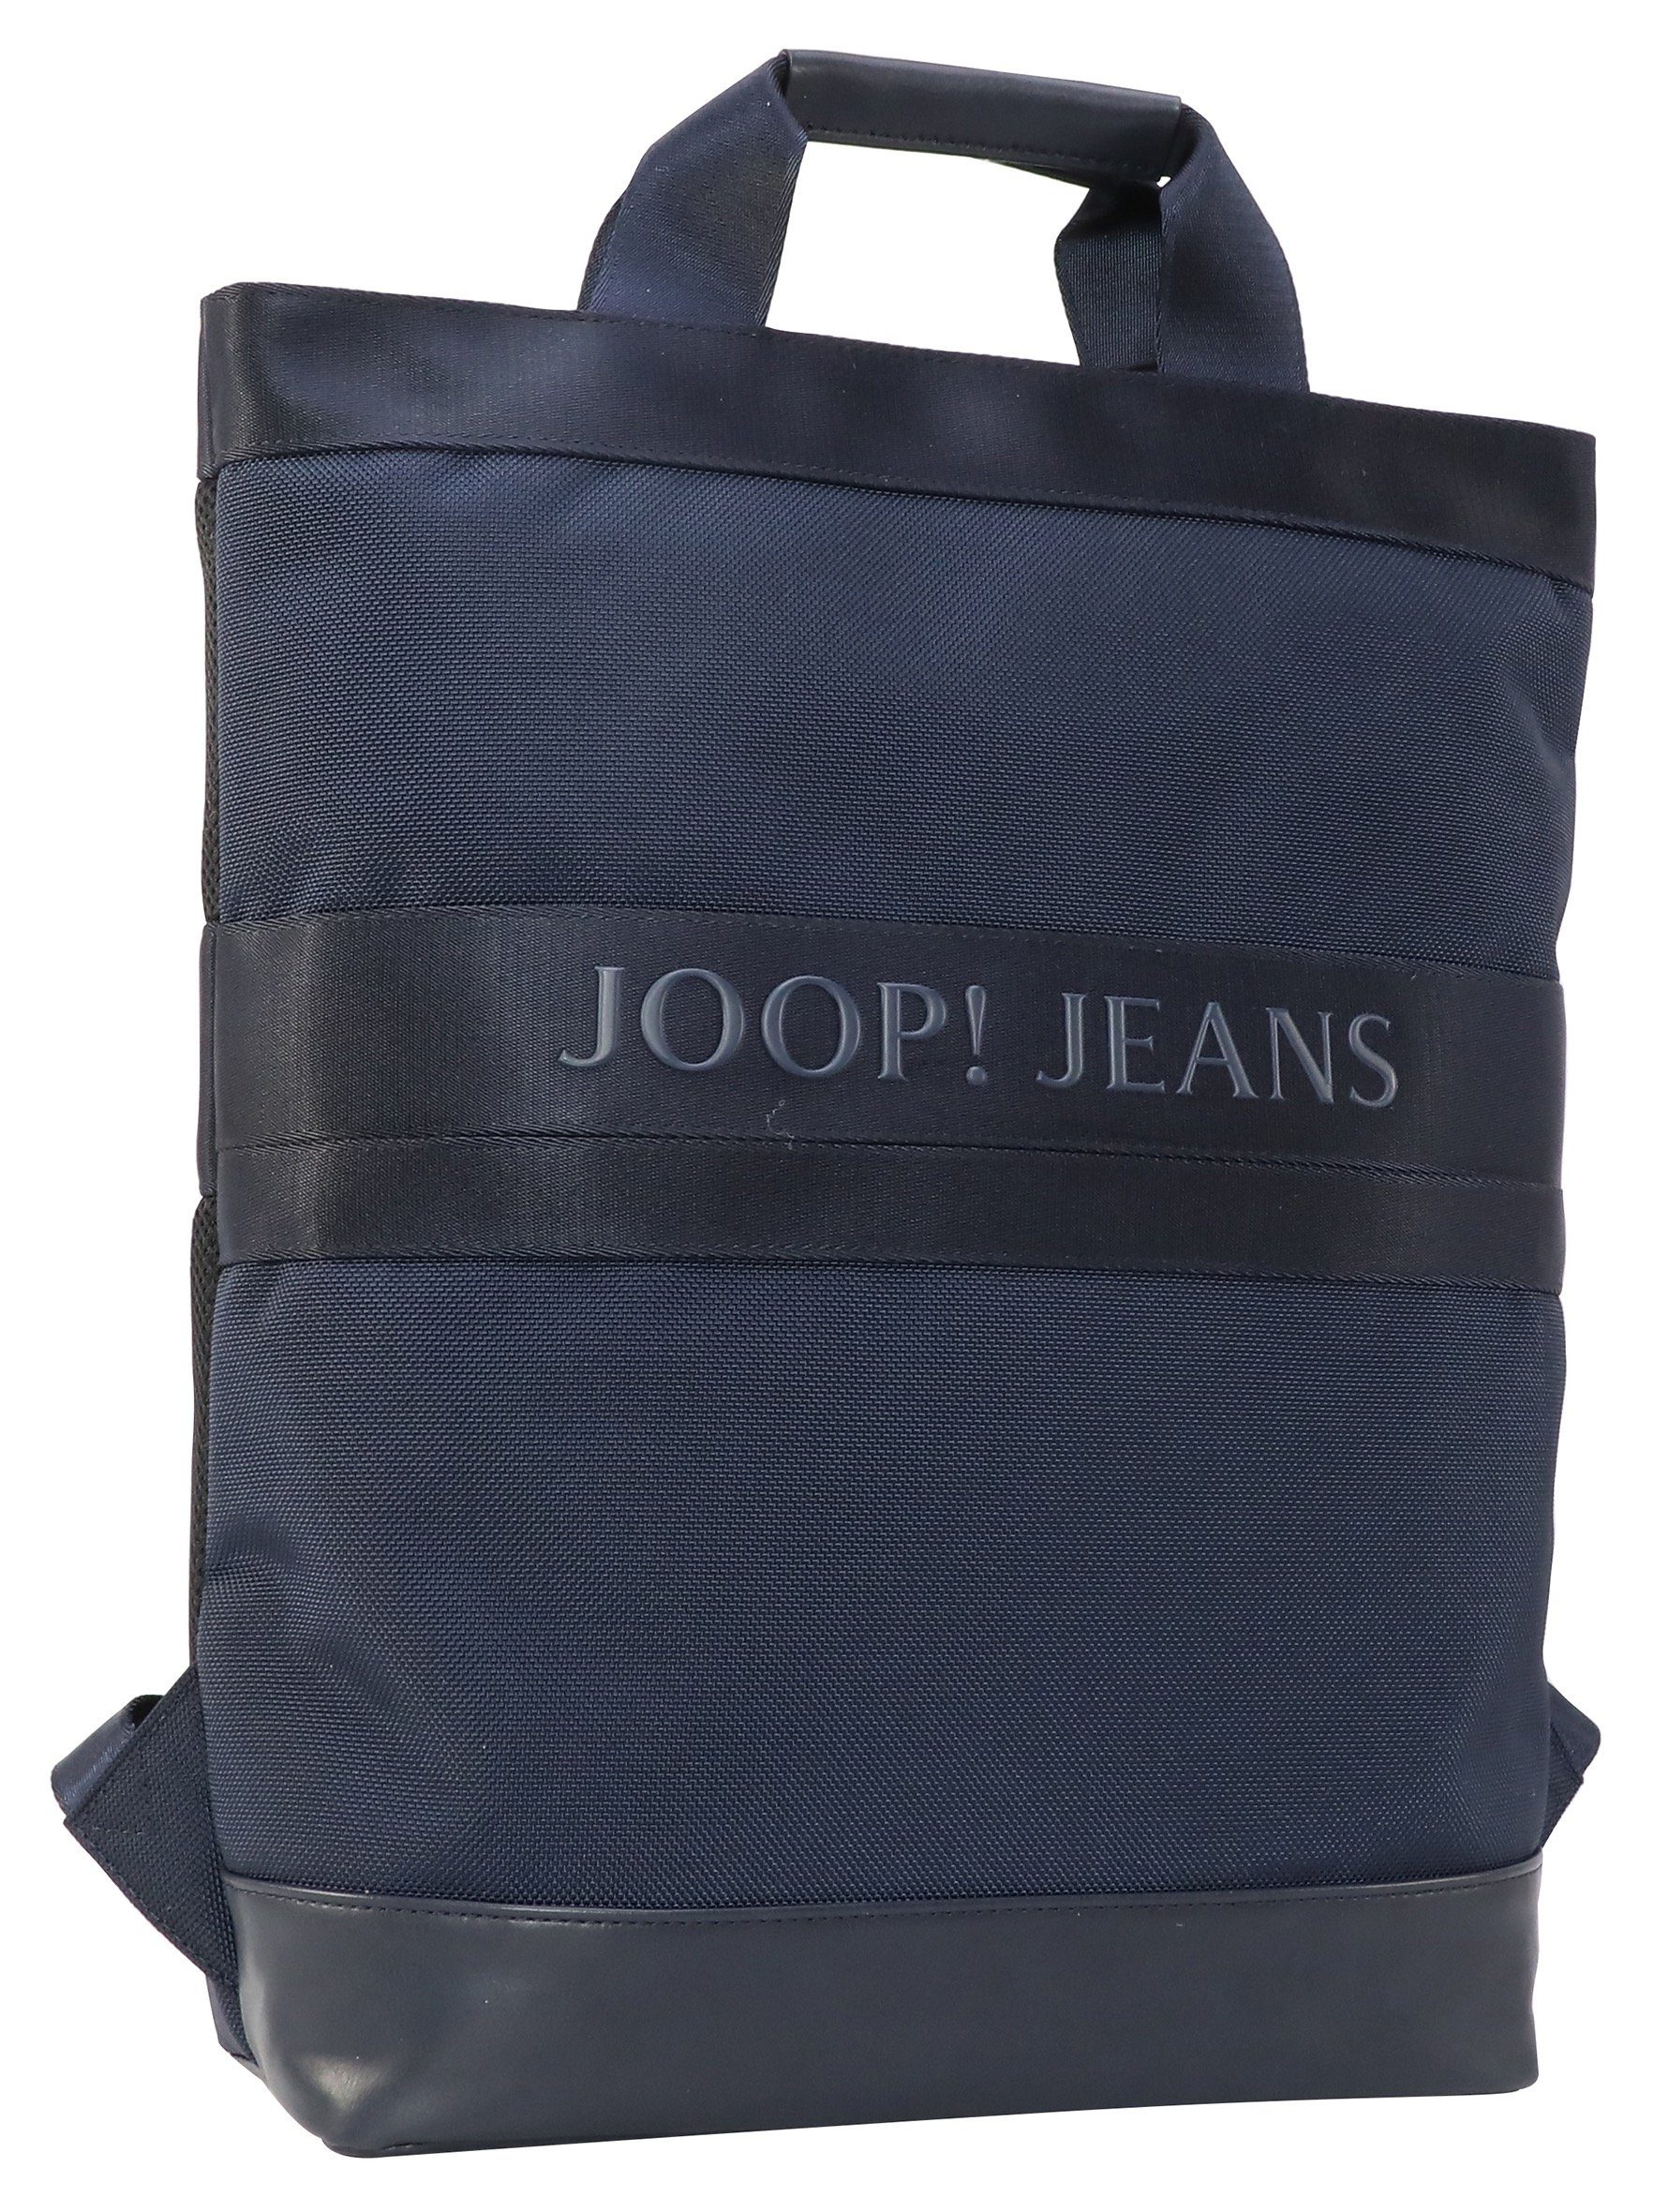 mit svz, falk Jeans Joop modica darkblue Reißverschluss-Vortasche Cityrucksack backpack